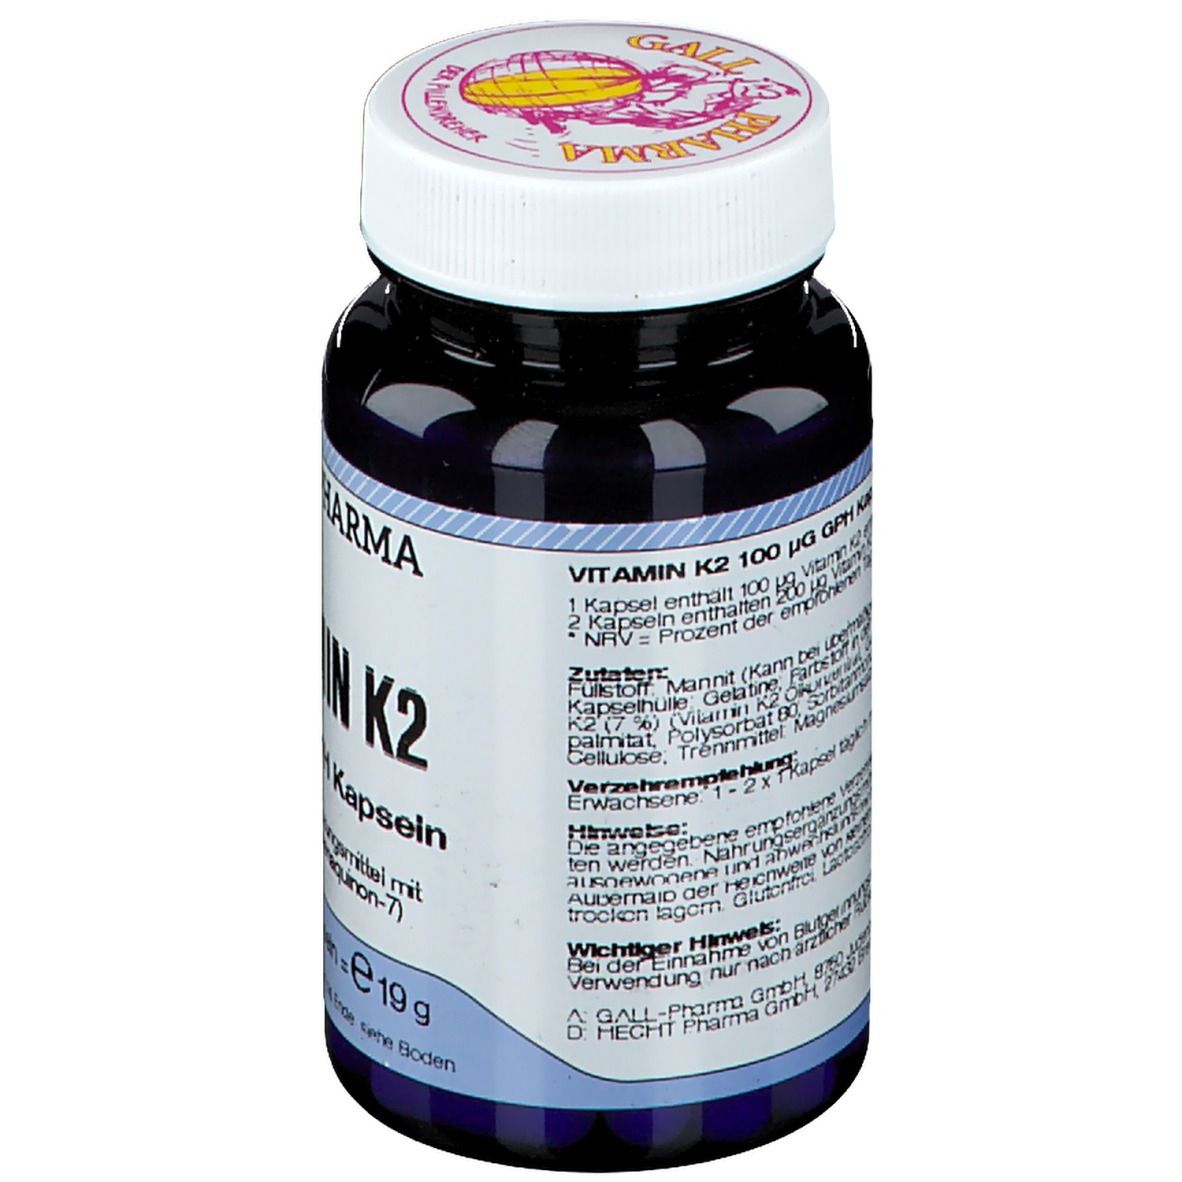 GALL PHARMA Vitamin K2 100 µg